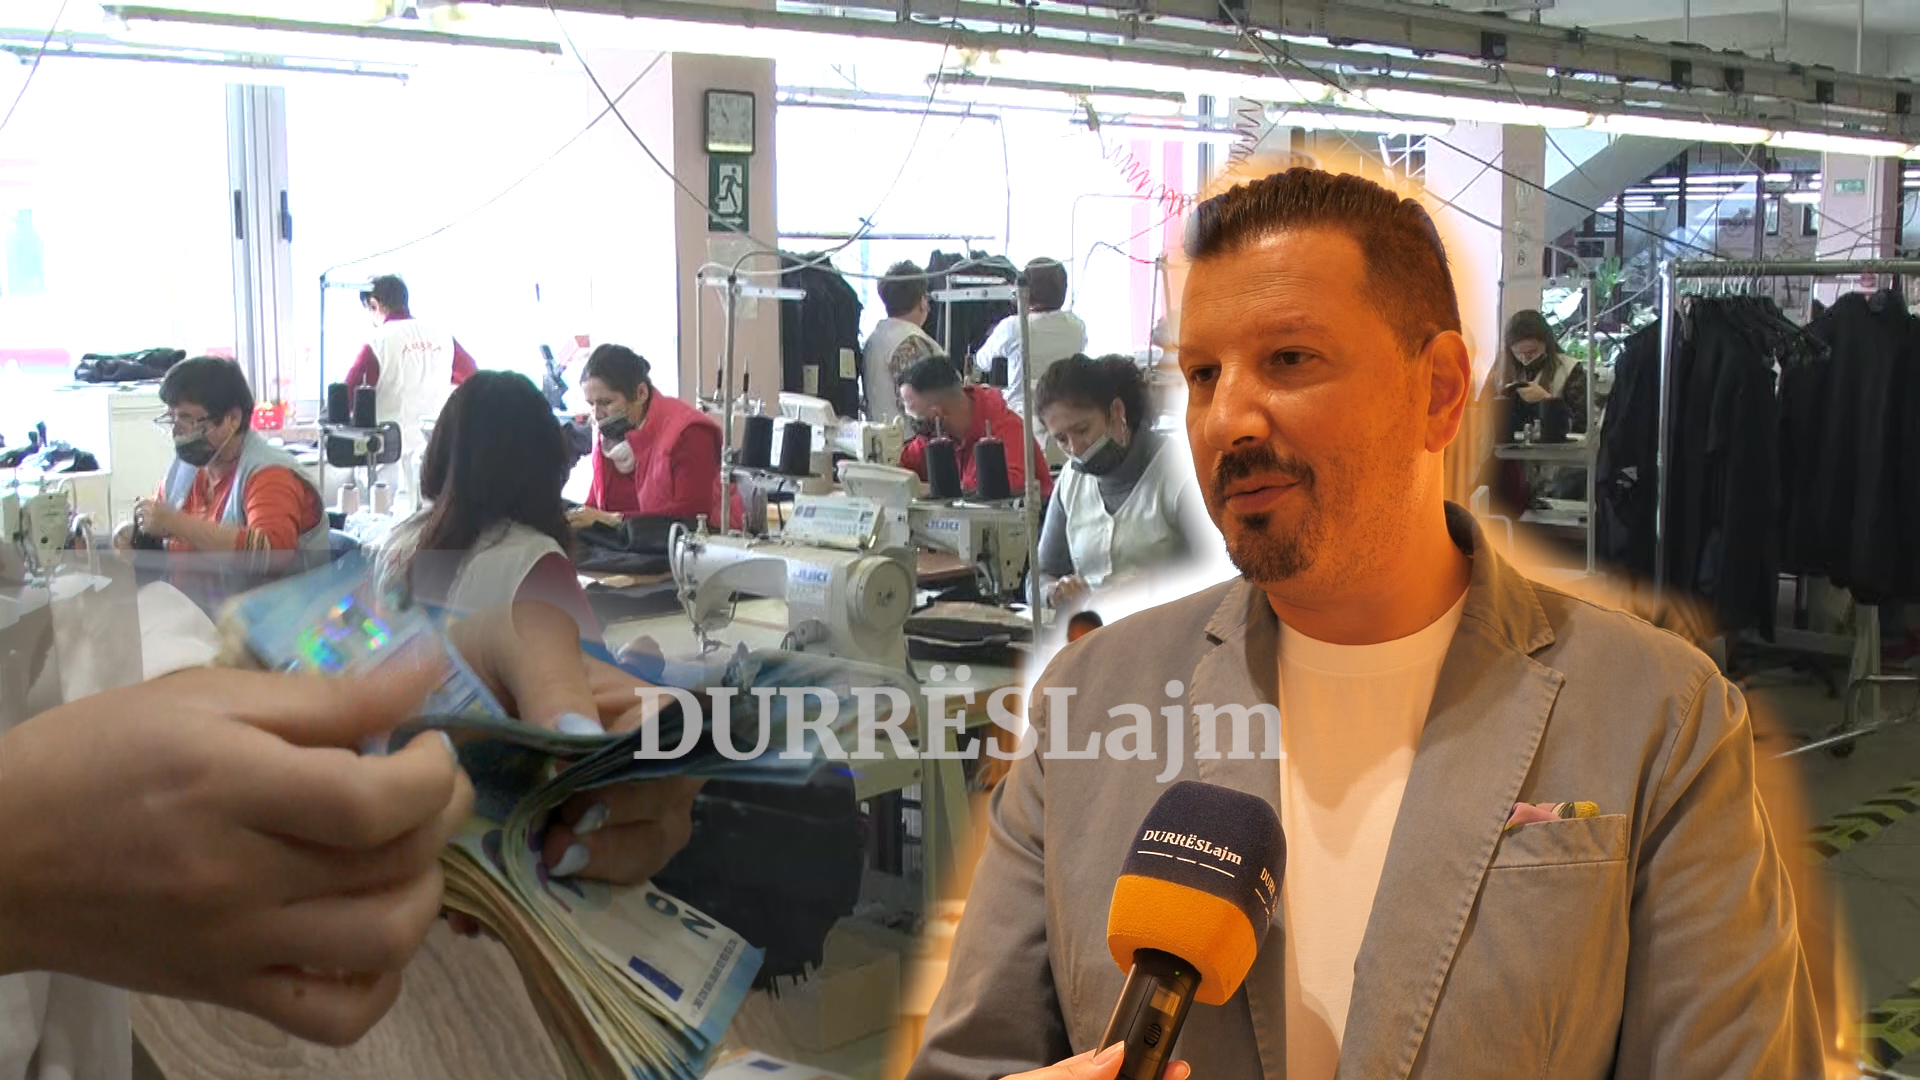 &#8220;30 punonjës më pak në ditë!&#8221;, Prençe: Në Durrës, shifra të frikshme nga sektori fason. Këmbana e alarmit po bie (VIDEO)